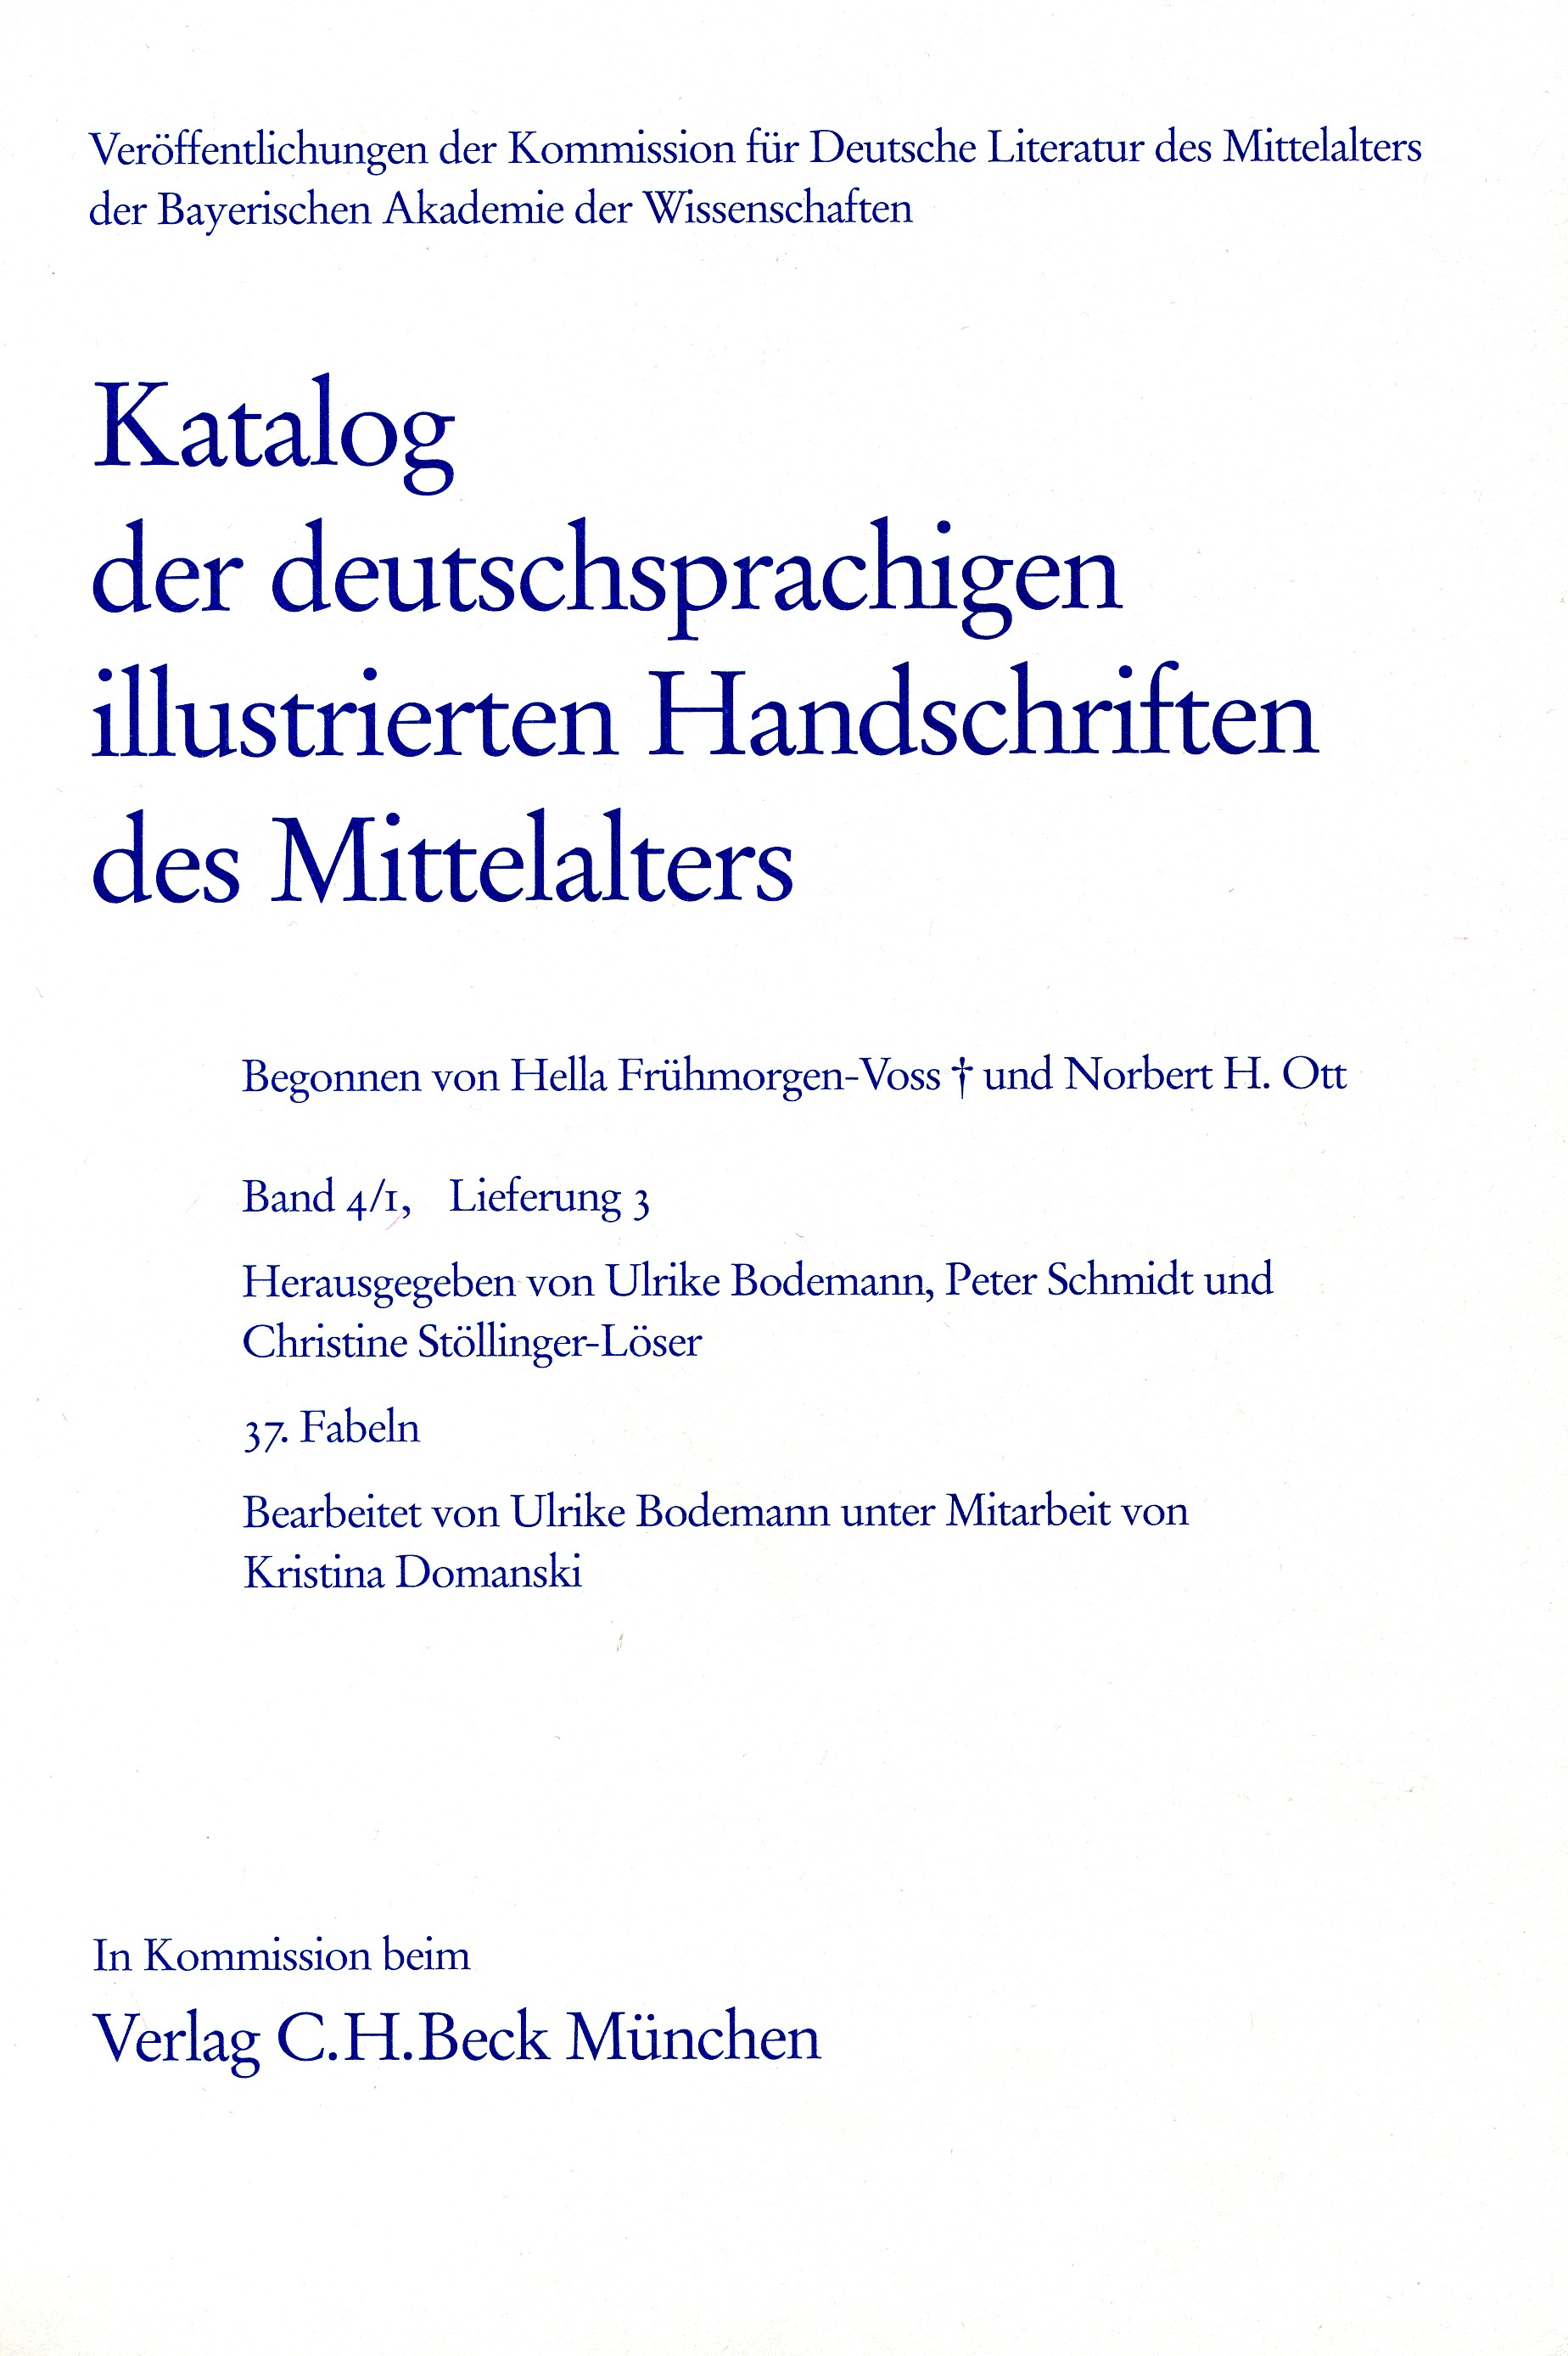 Cover: Bodemann, Ulrike /  Freienhagen-Baumgardt, Kristina / Schmidt, Peter, Katalog der deutschsprachigen illustrierten Handschriften des Mittelalters Band 4/1, Lfg. 3: 37